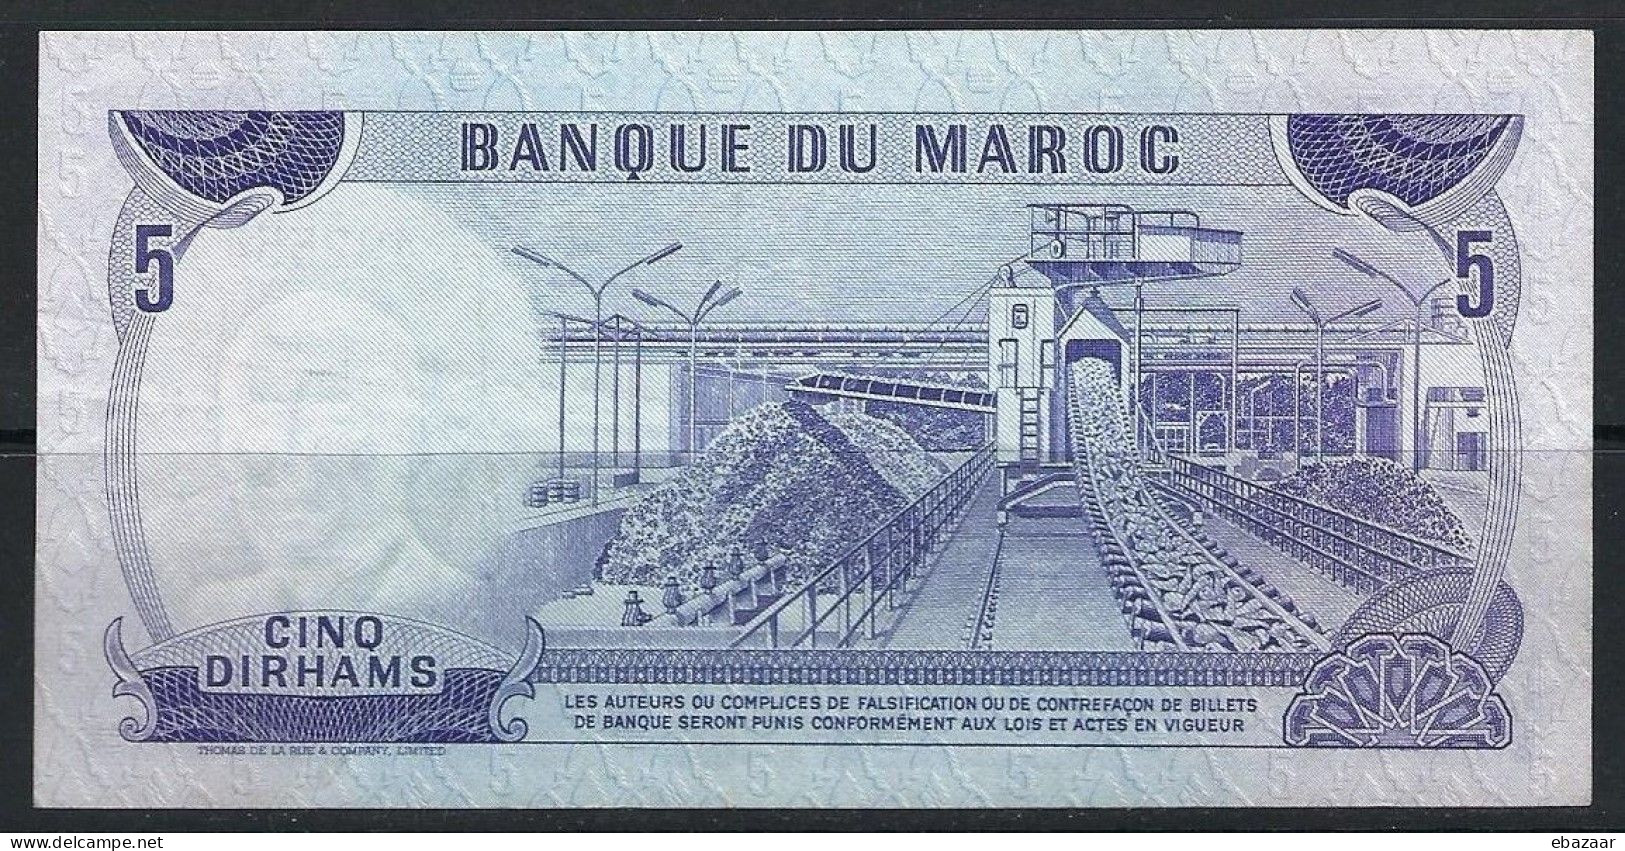 Morocco 1970 Banque Du Maroc 5 Dirhams Banknote P-56a VF++ Crisp - Marokko